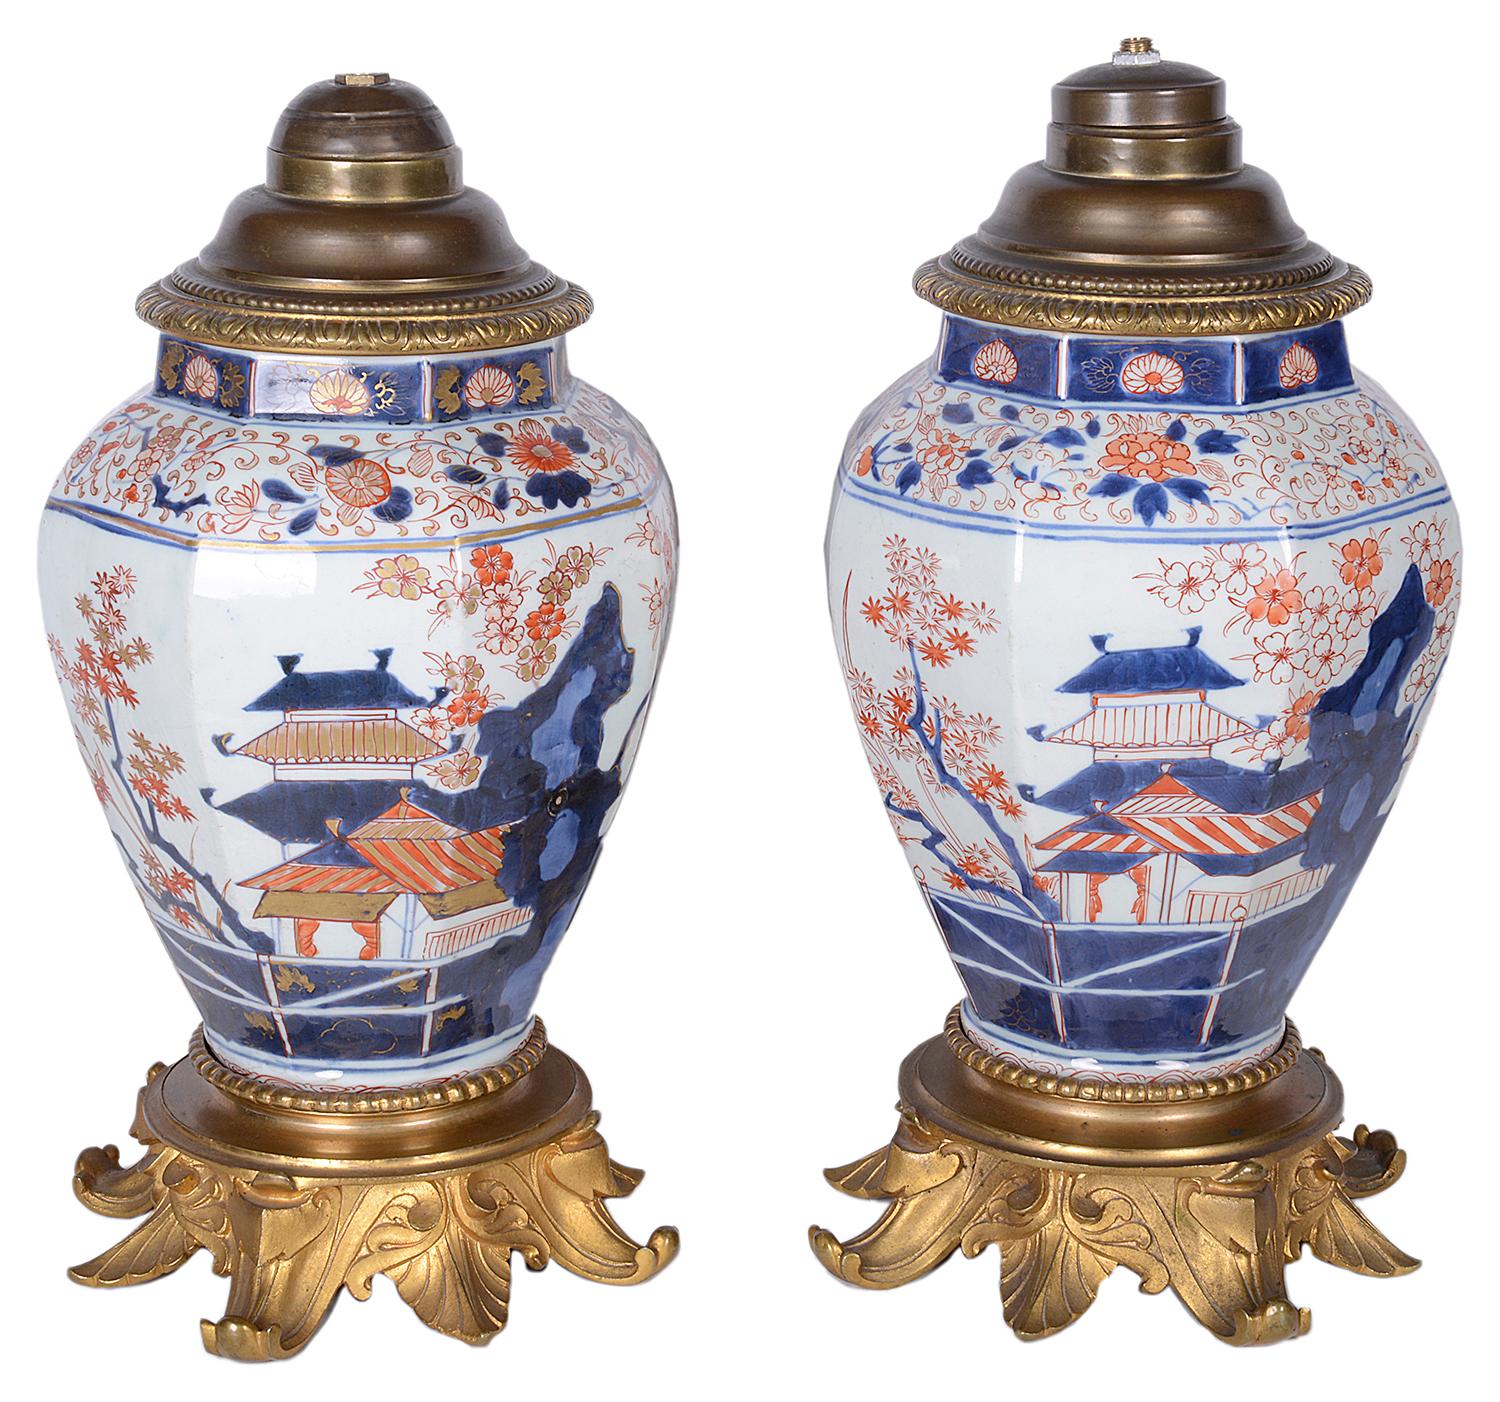 Ein Paar japanischer Imari-Vasen/Lampen aus dem späten 18. Jahrhundert in guter Qualität. Jede mit klassischem Pagodenbau, exotischen Blumen und Vögeln, die auf ausgefeilten Ormolu-Sockeln stehen.